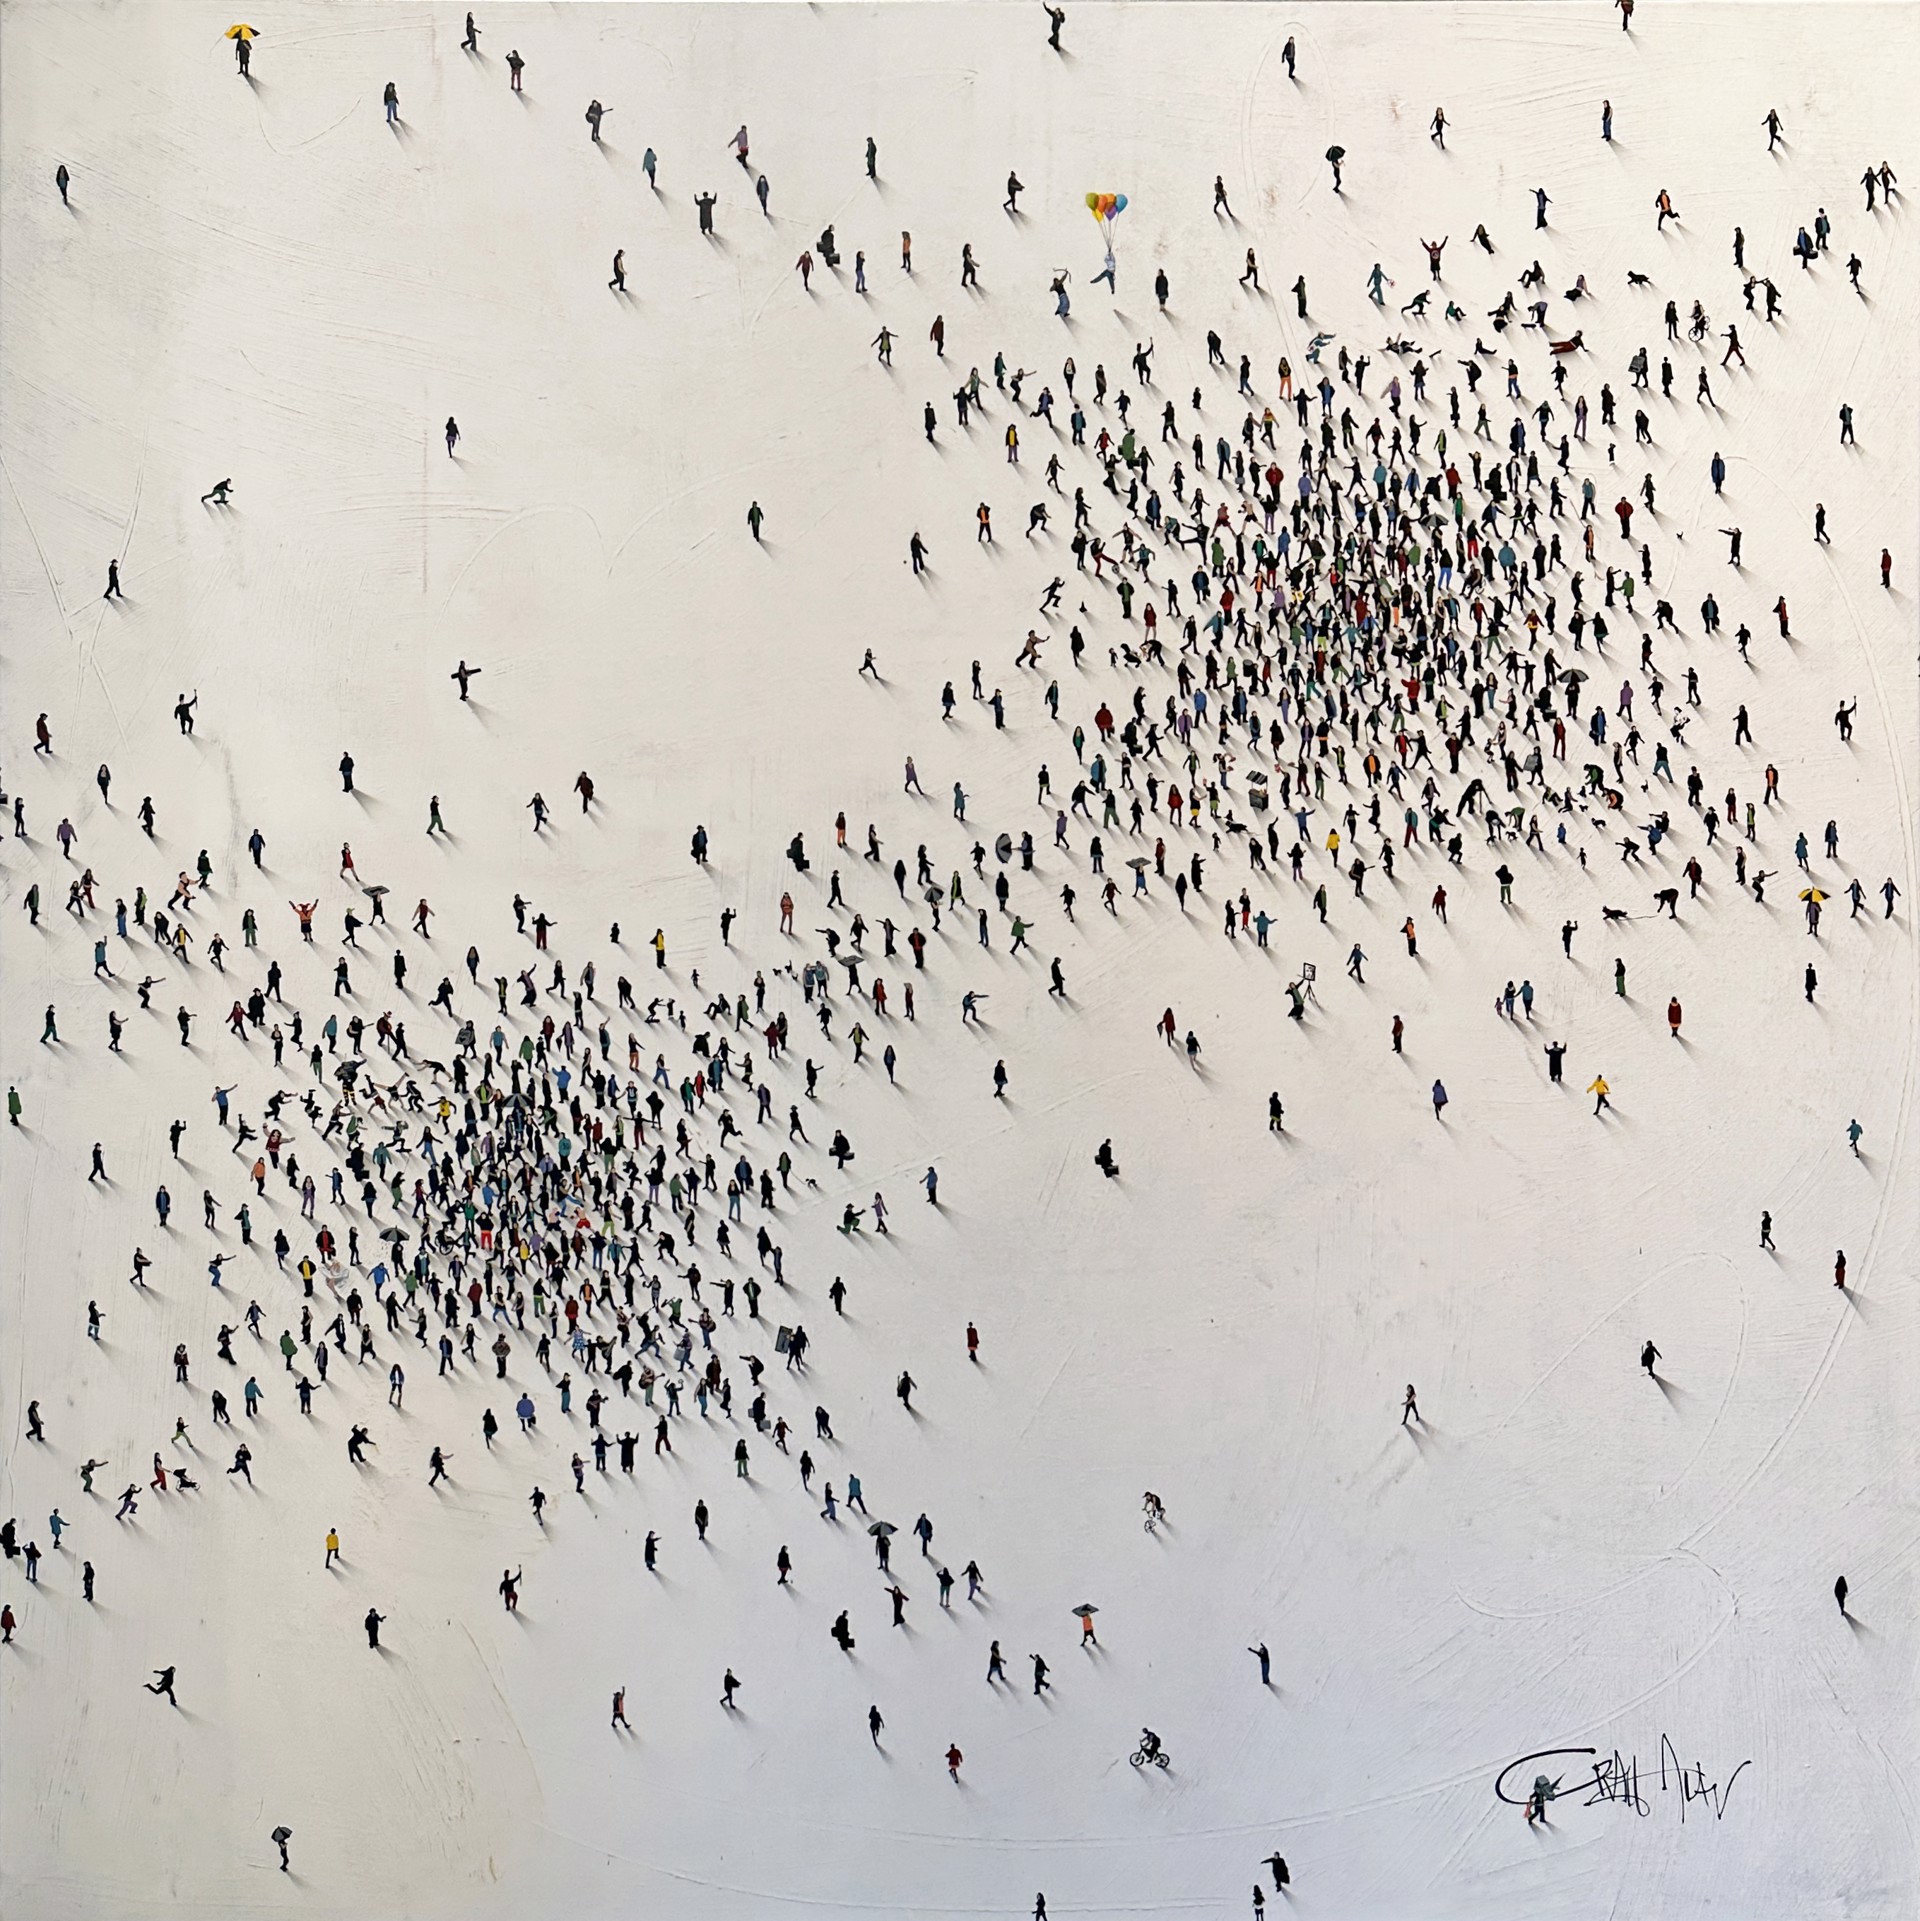 Populous - Conceptual by Craig Alan